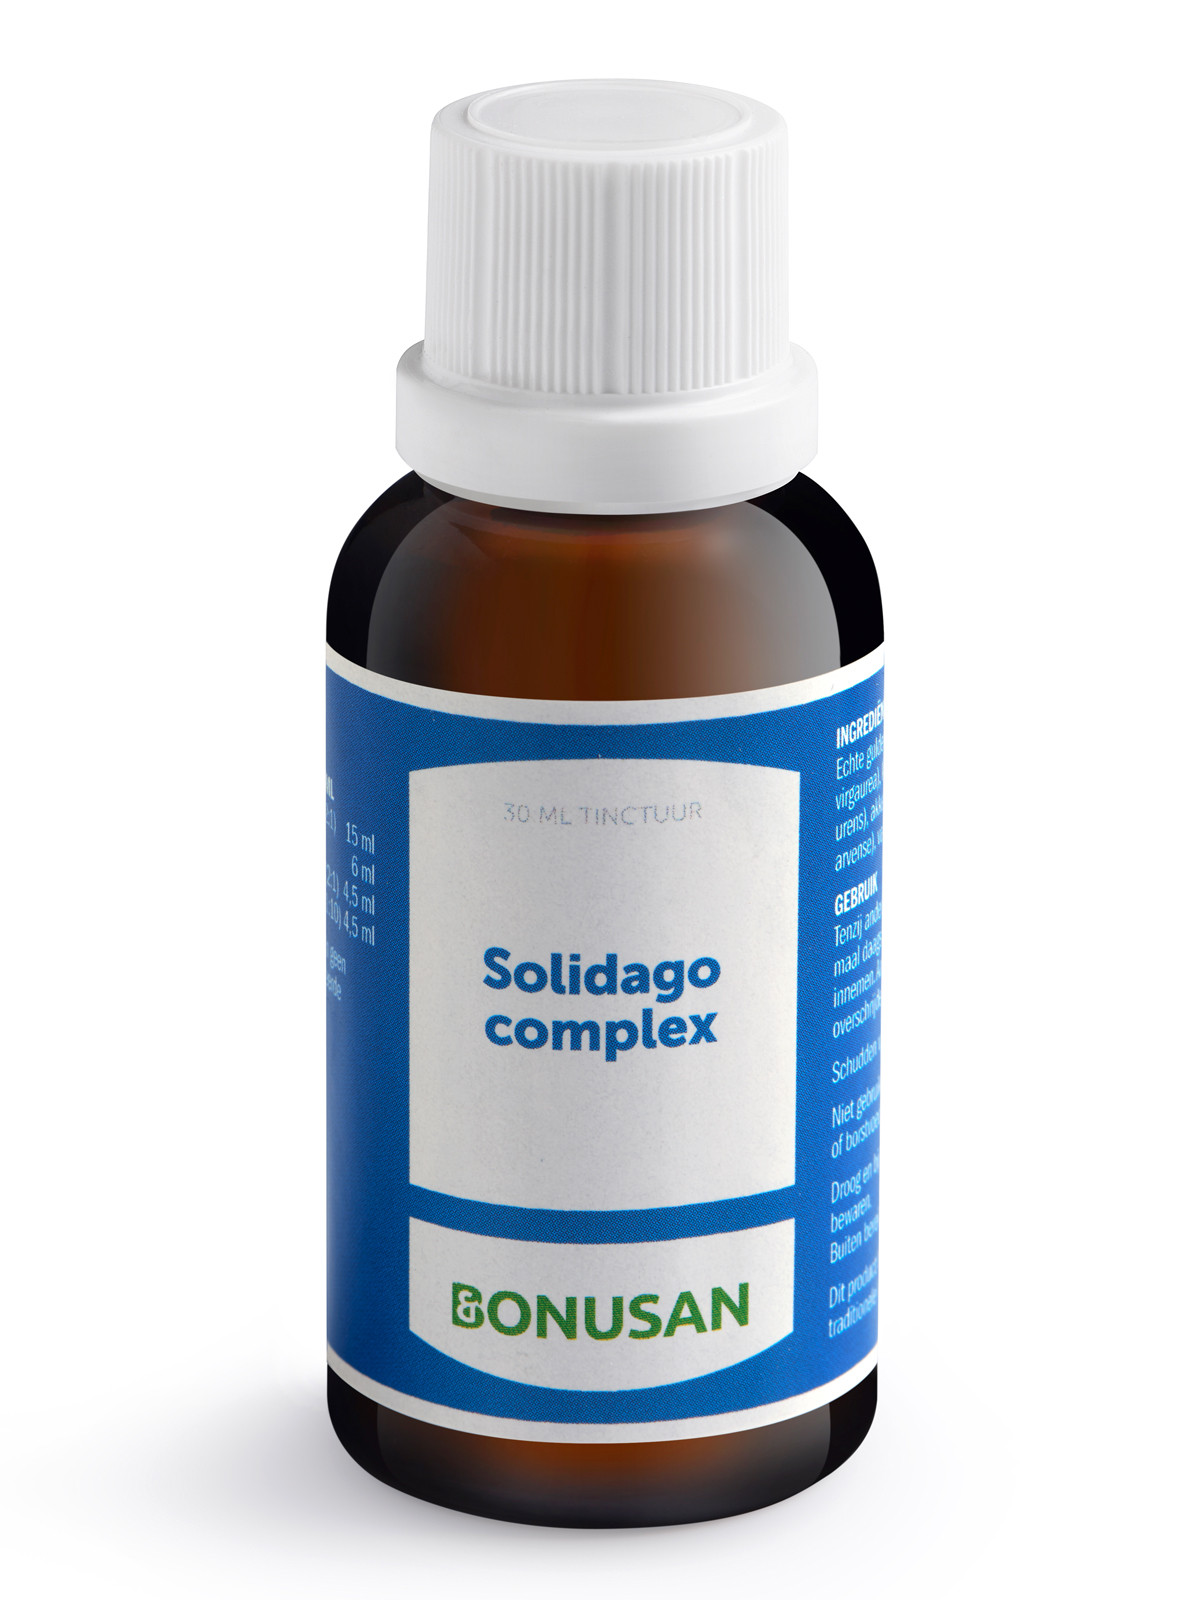 Bonusan - Solidago complex tinctuur